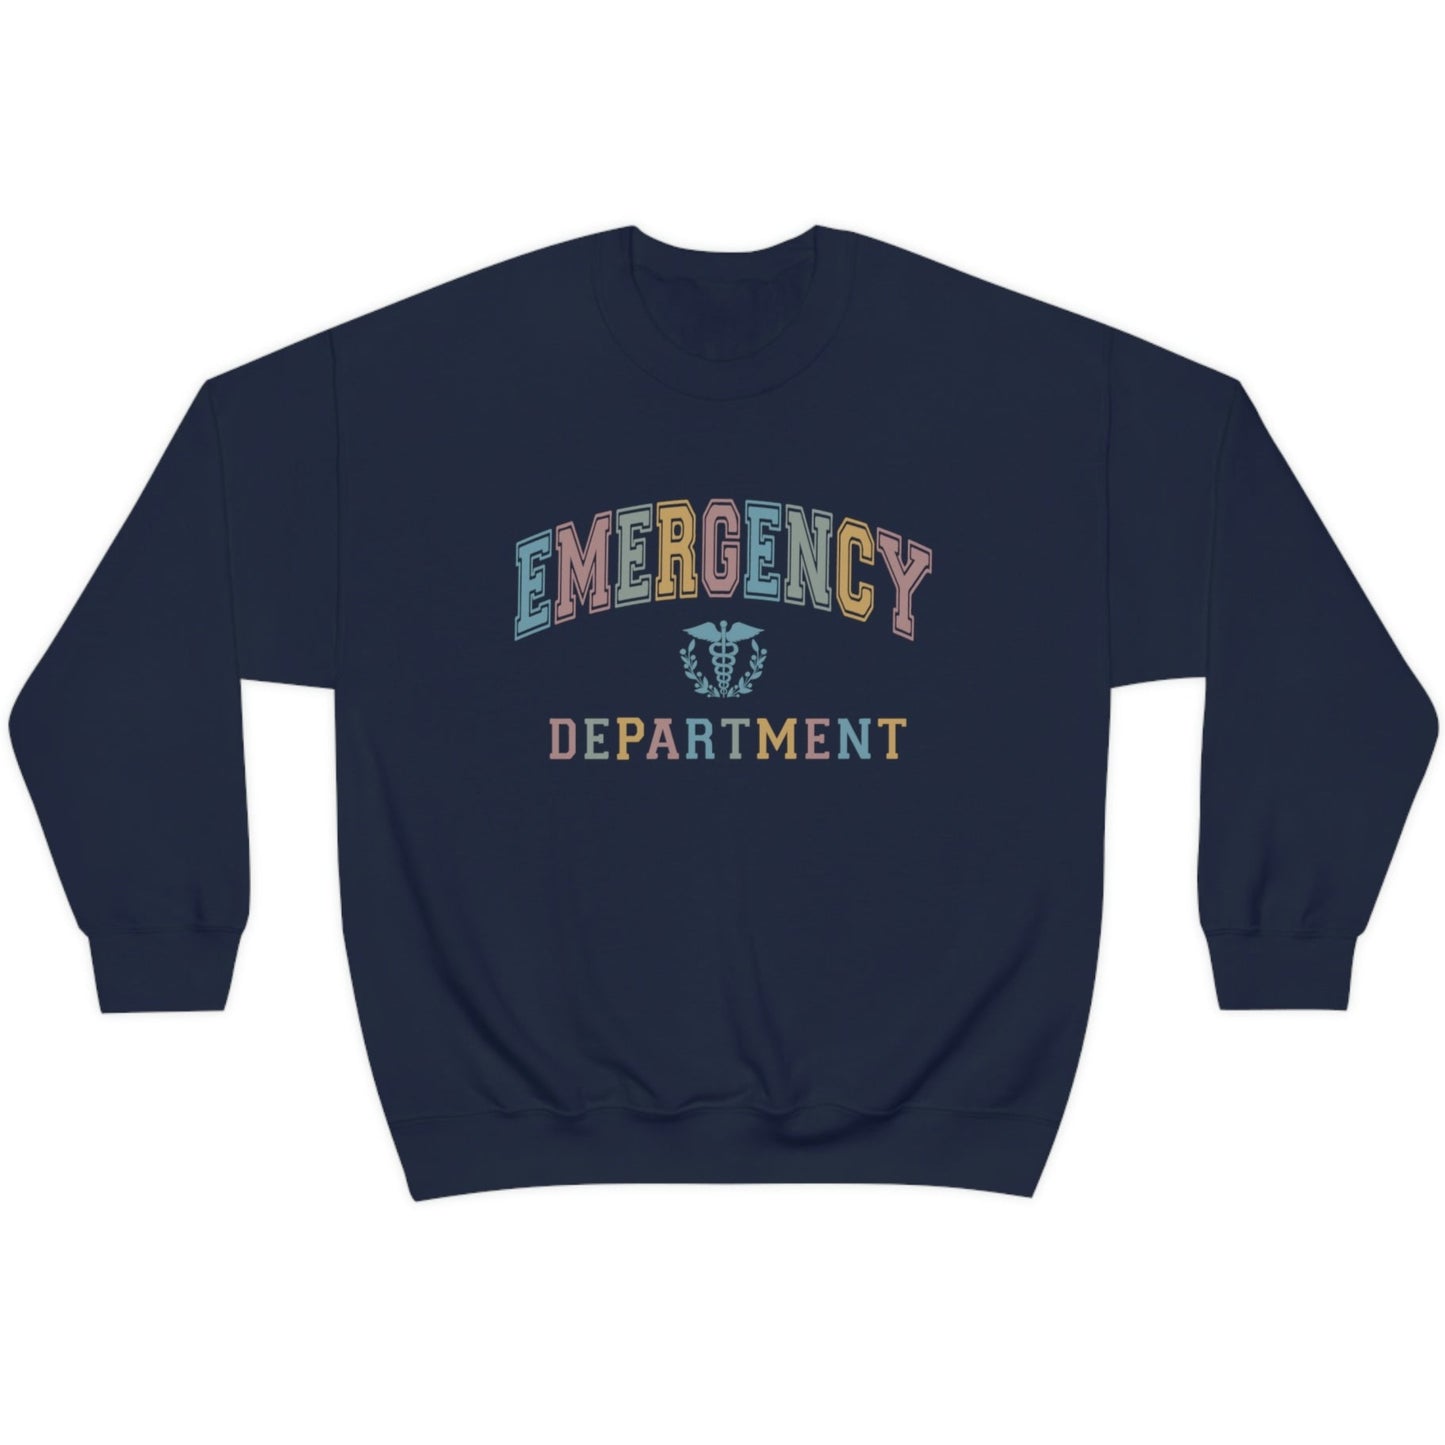 Colorful Varsity Emergency Department Sweatshirt